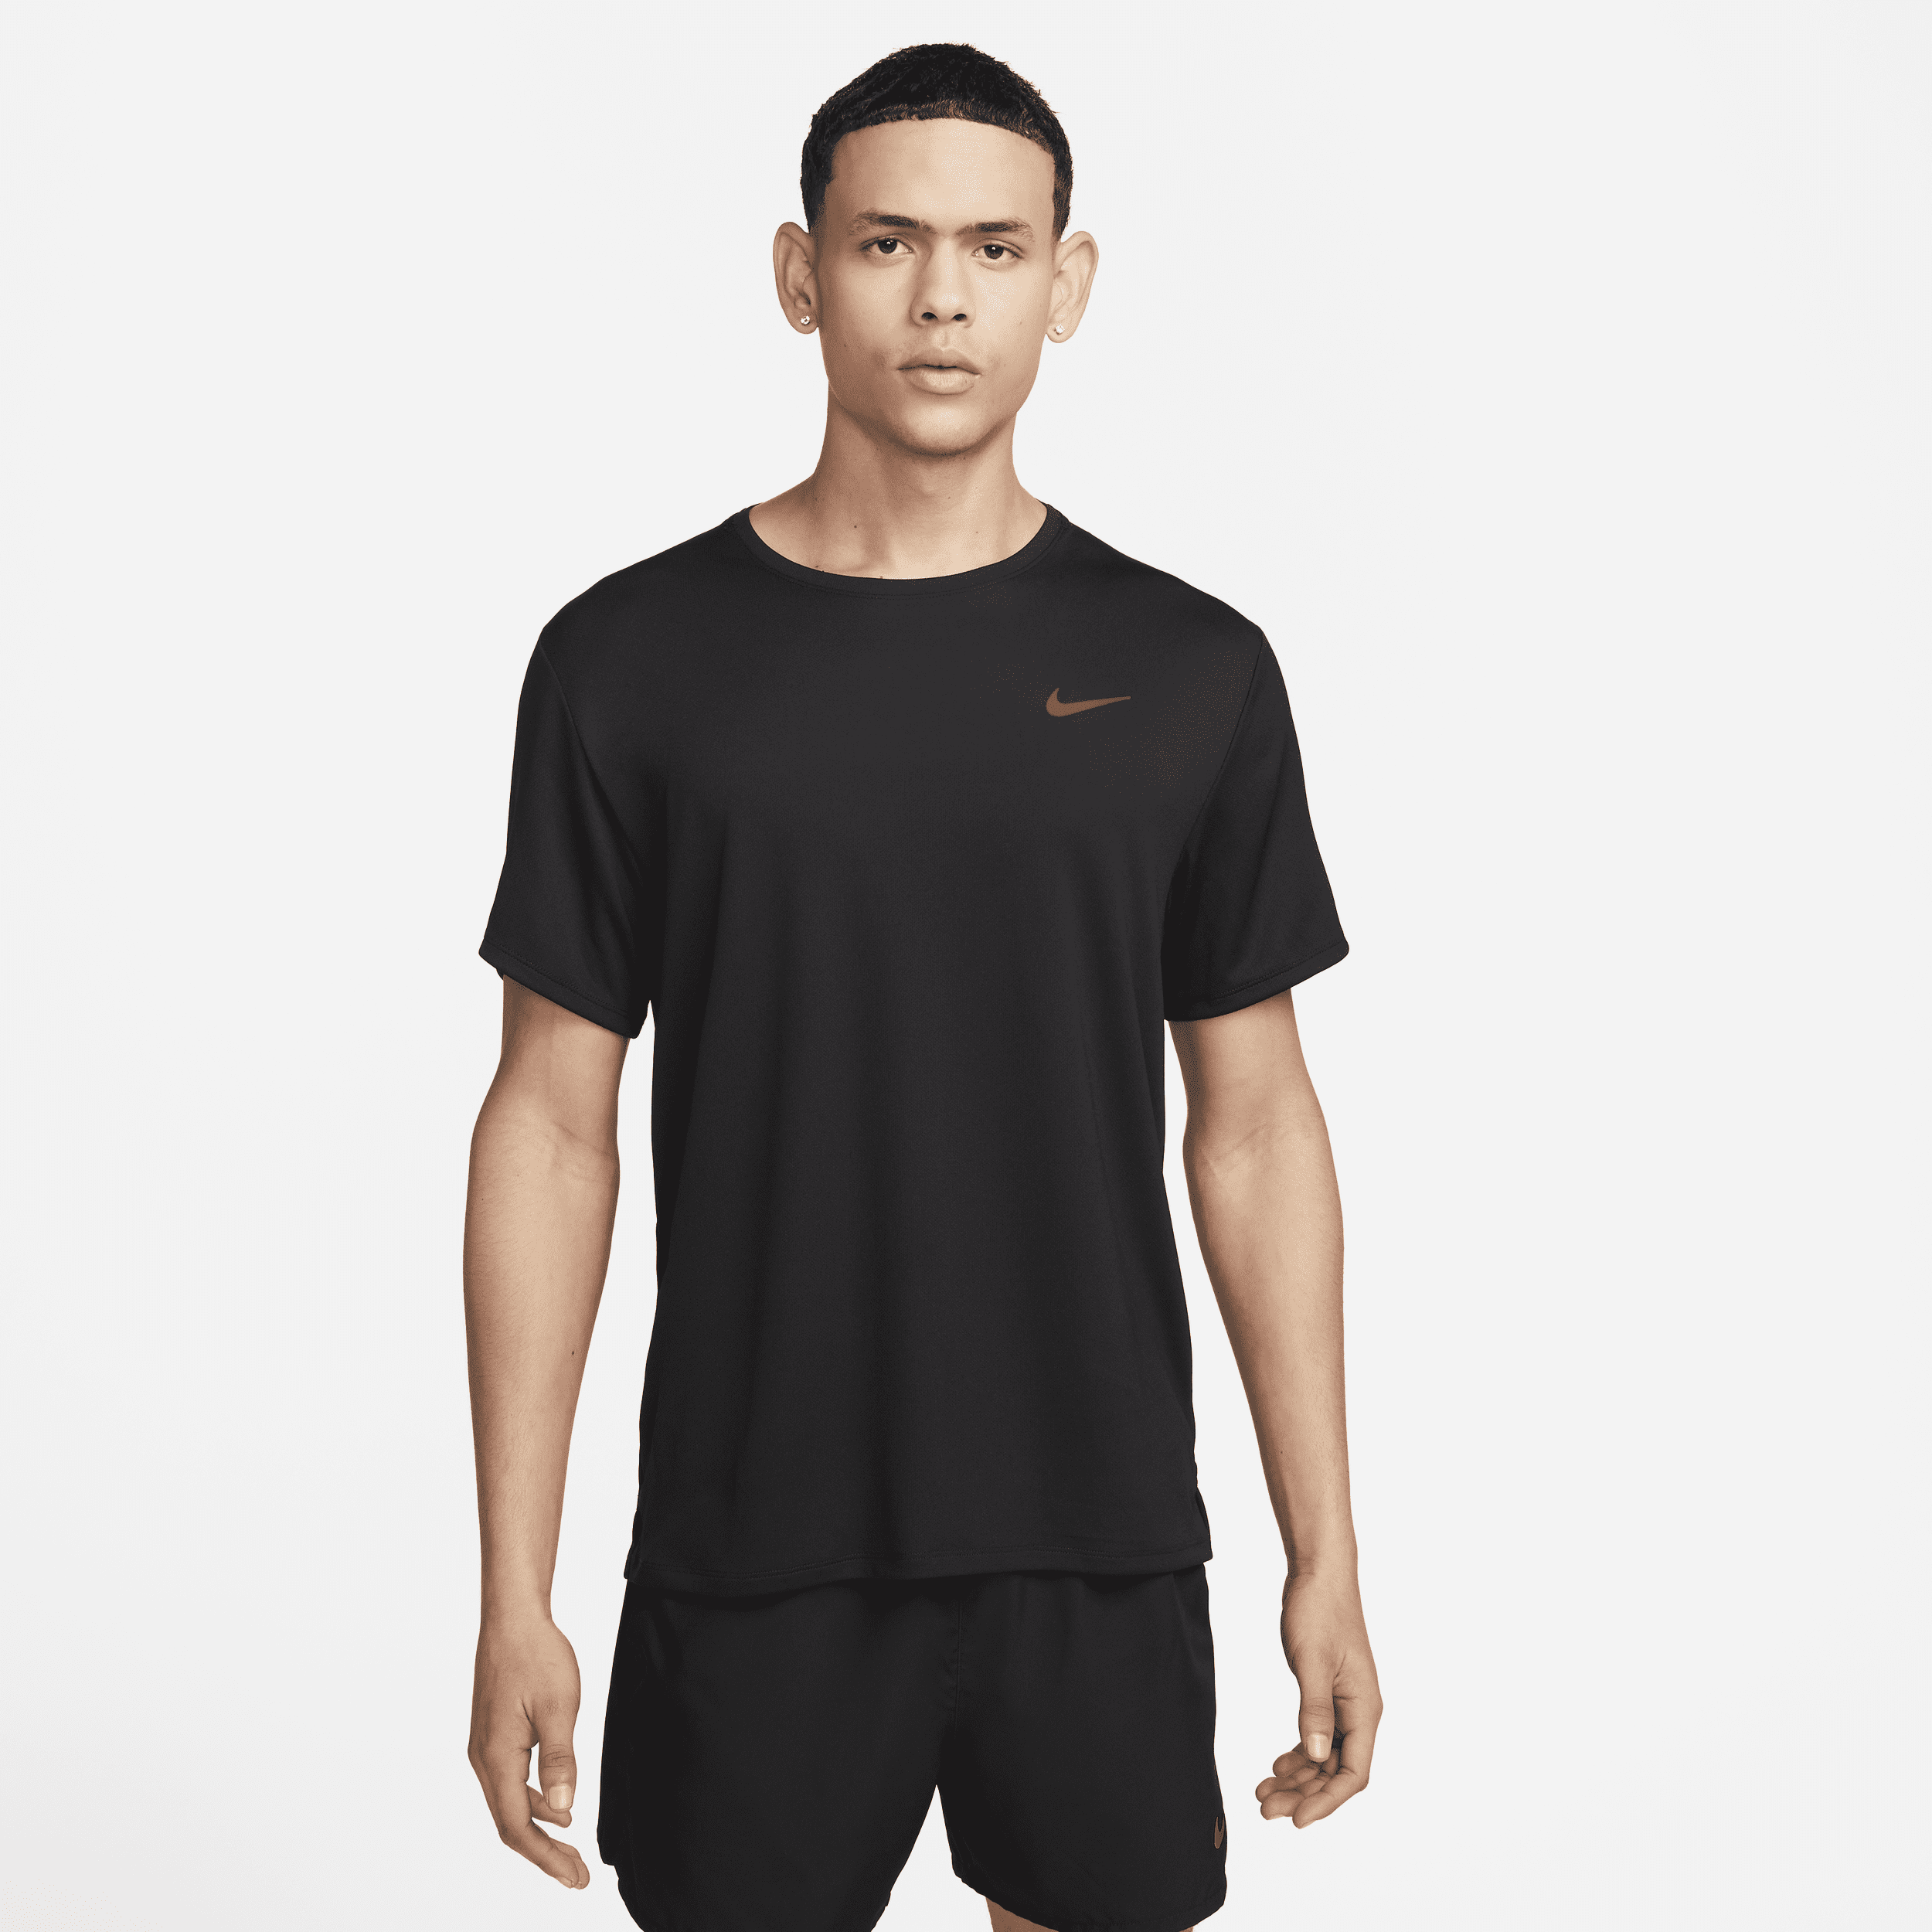 Maglia da running a manica corta Dri-FIT UV Nike Miler – Uomo - Nero